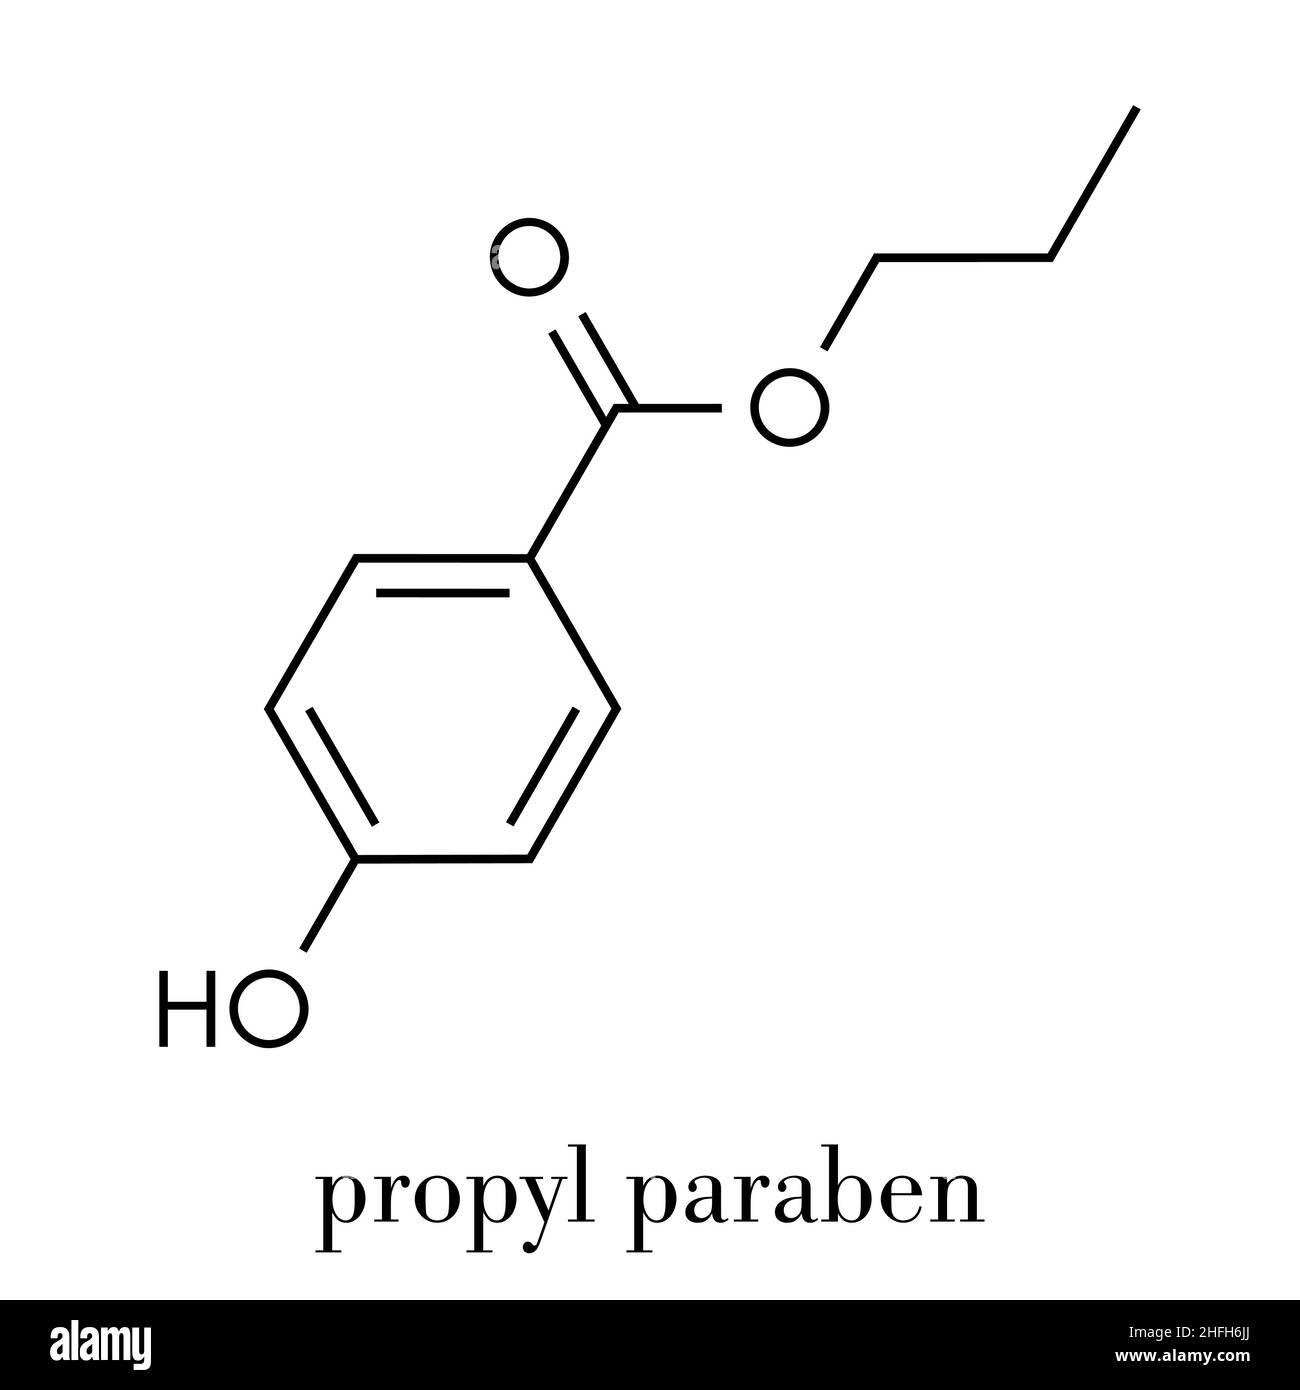 Propyl paraben preservative molecule. Used in food and cosmetics. Skeletal formula. Stock Vector